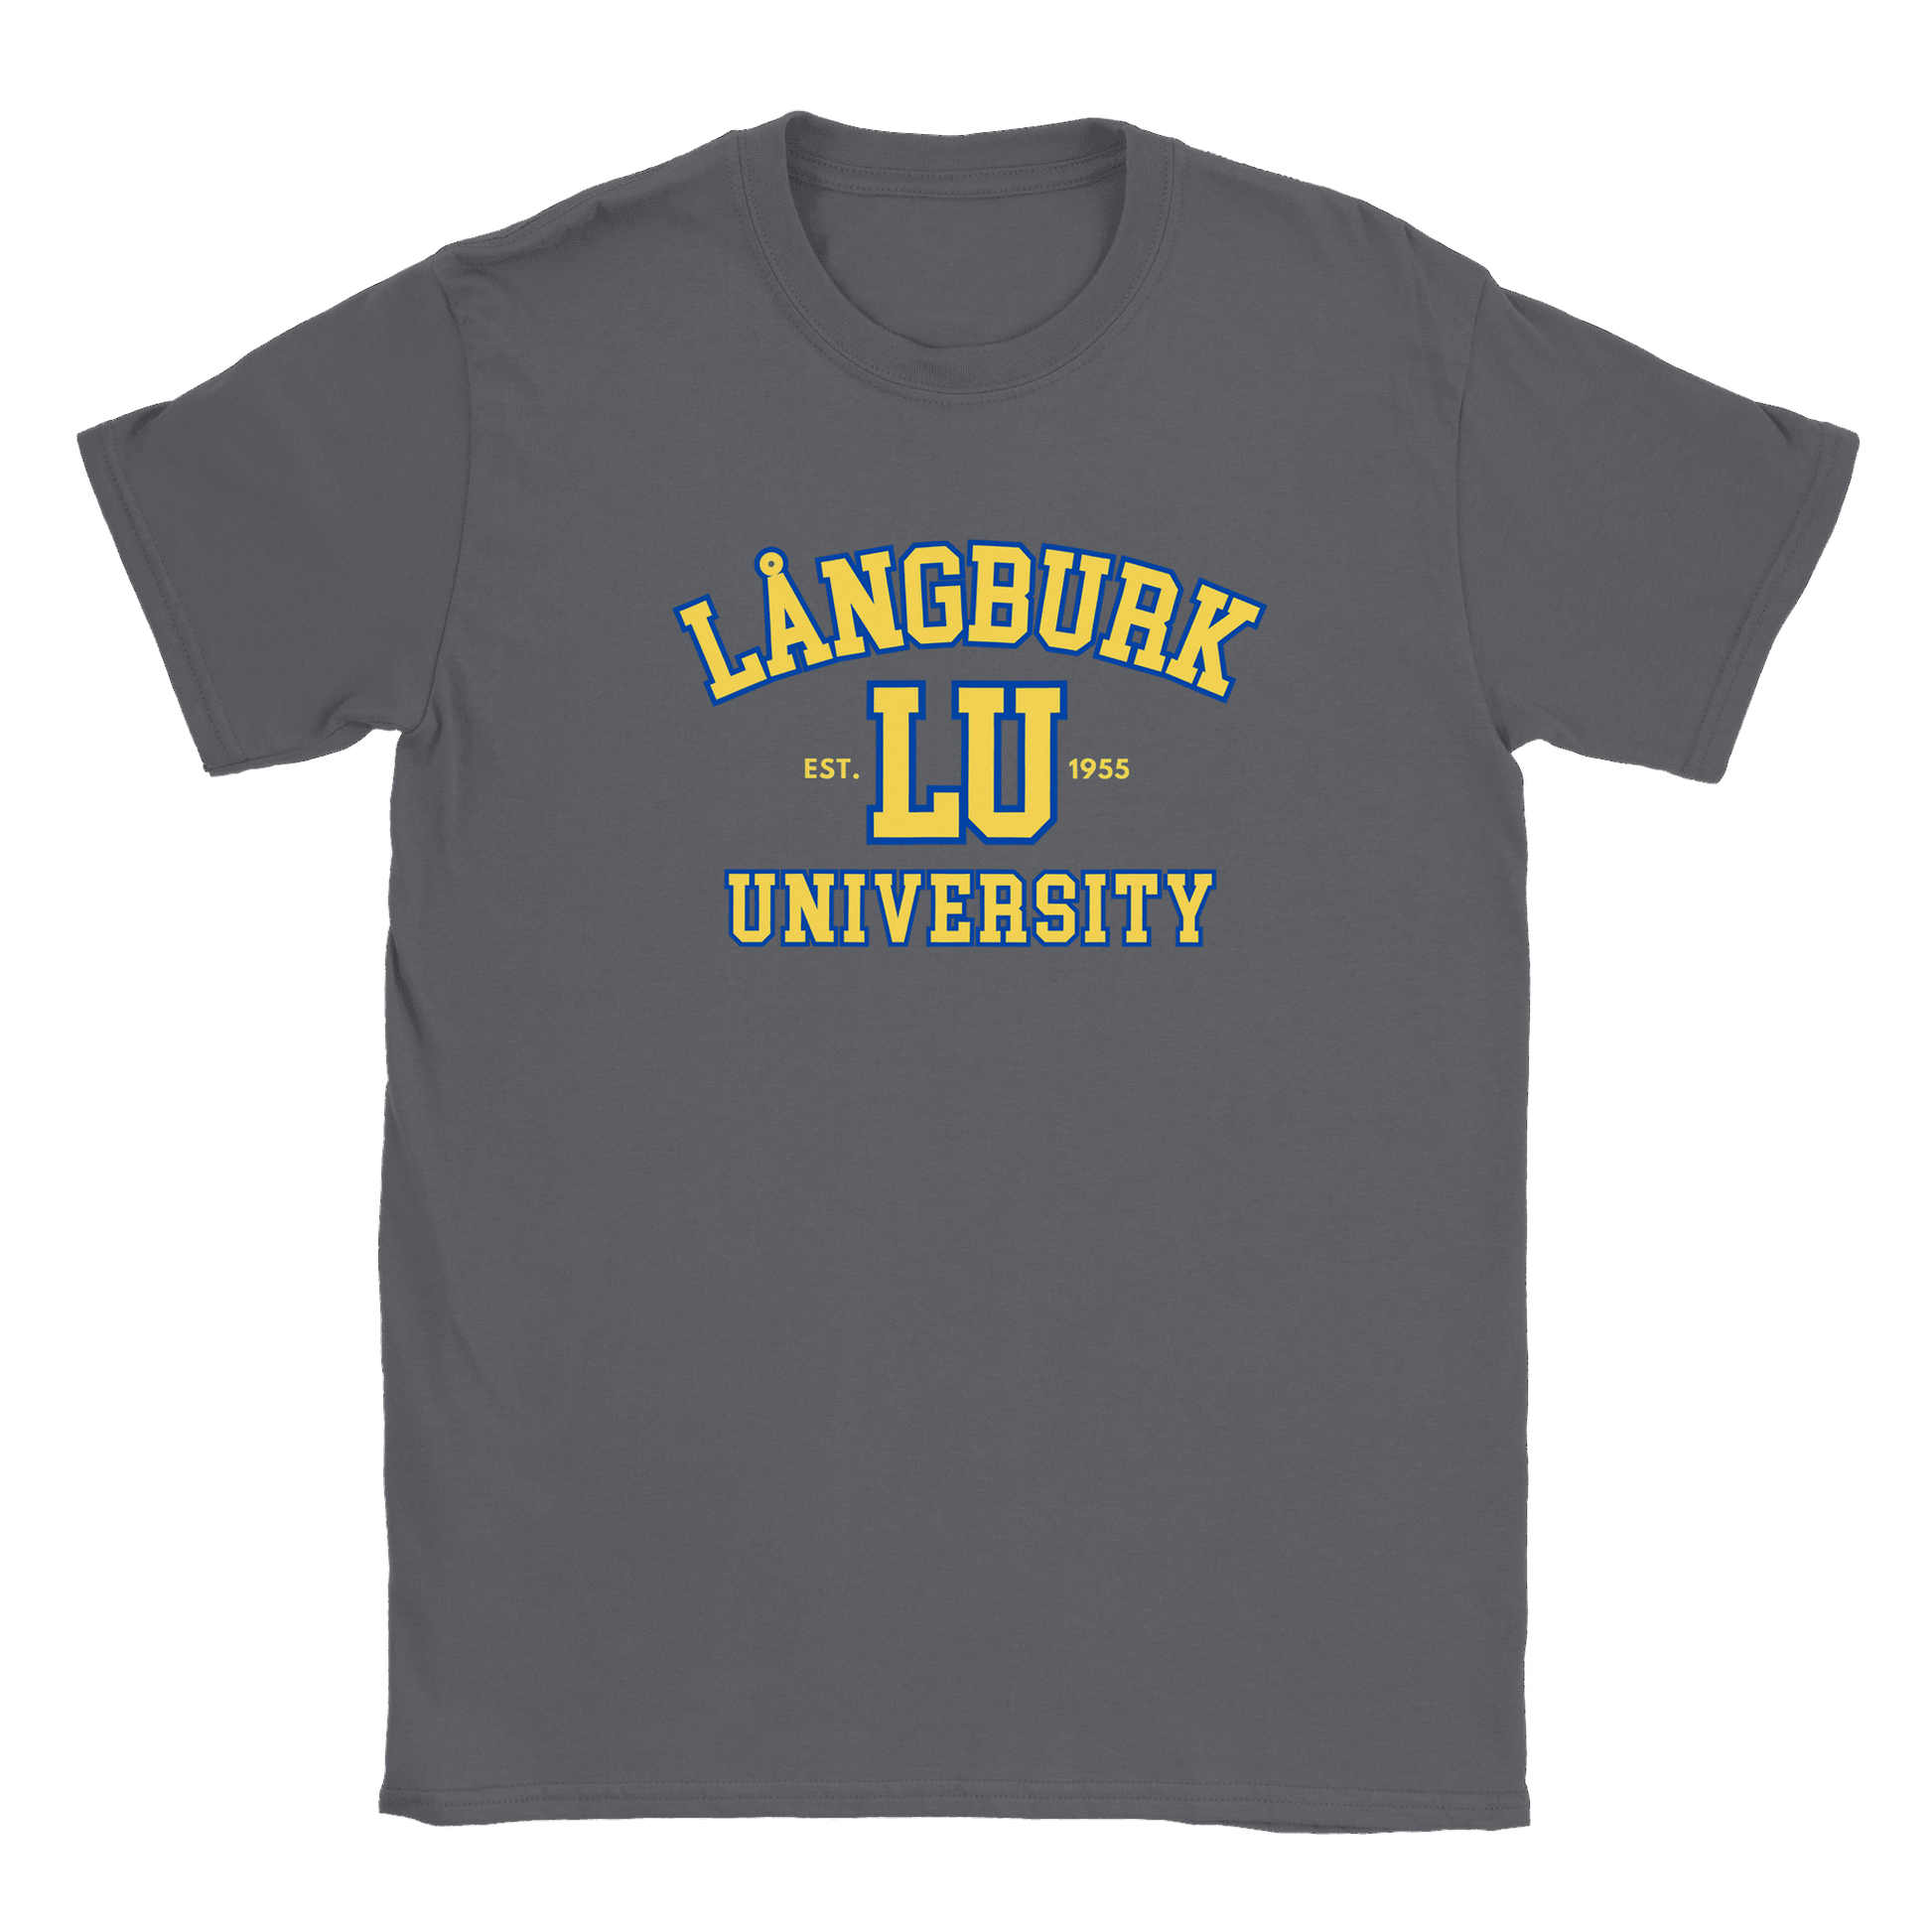 Långburk University - T-shirt Charcoal